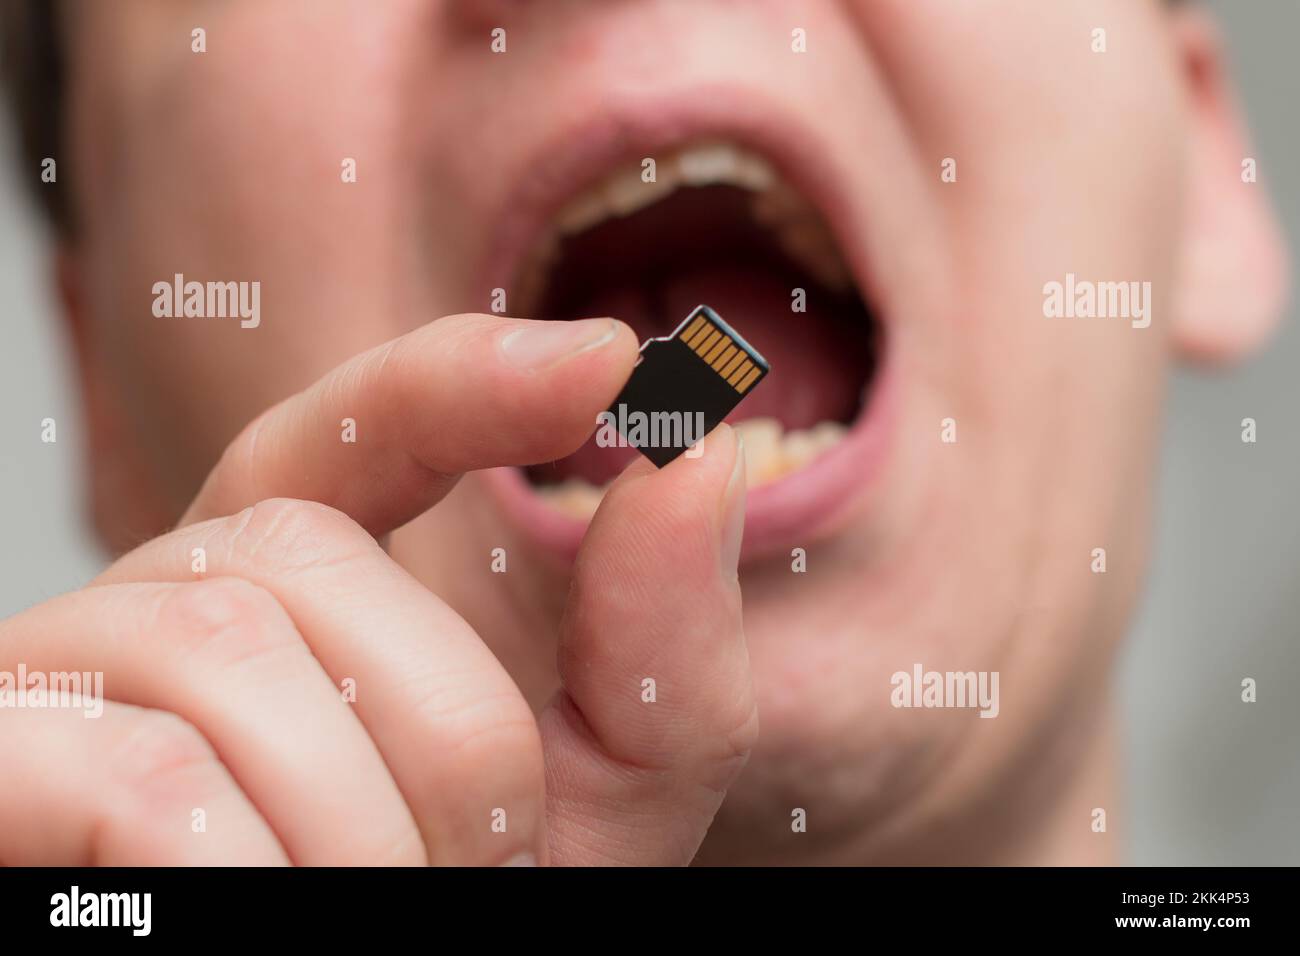 Mettere la scheda di memoria micro SDHC in bocca - messa a fuoco poco profonda Foto Stock